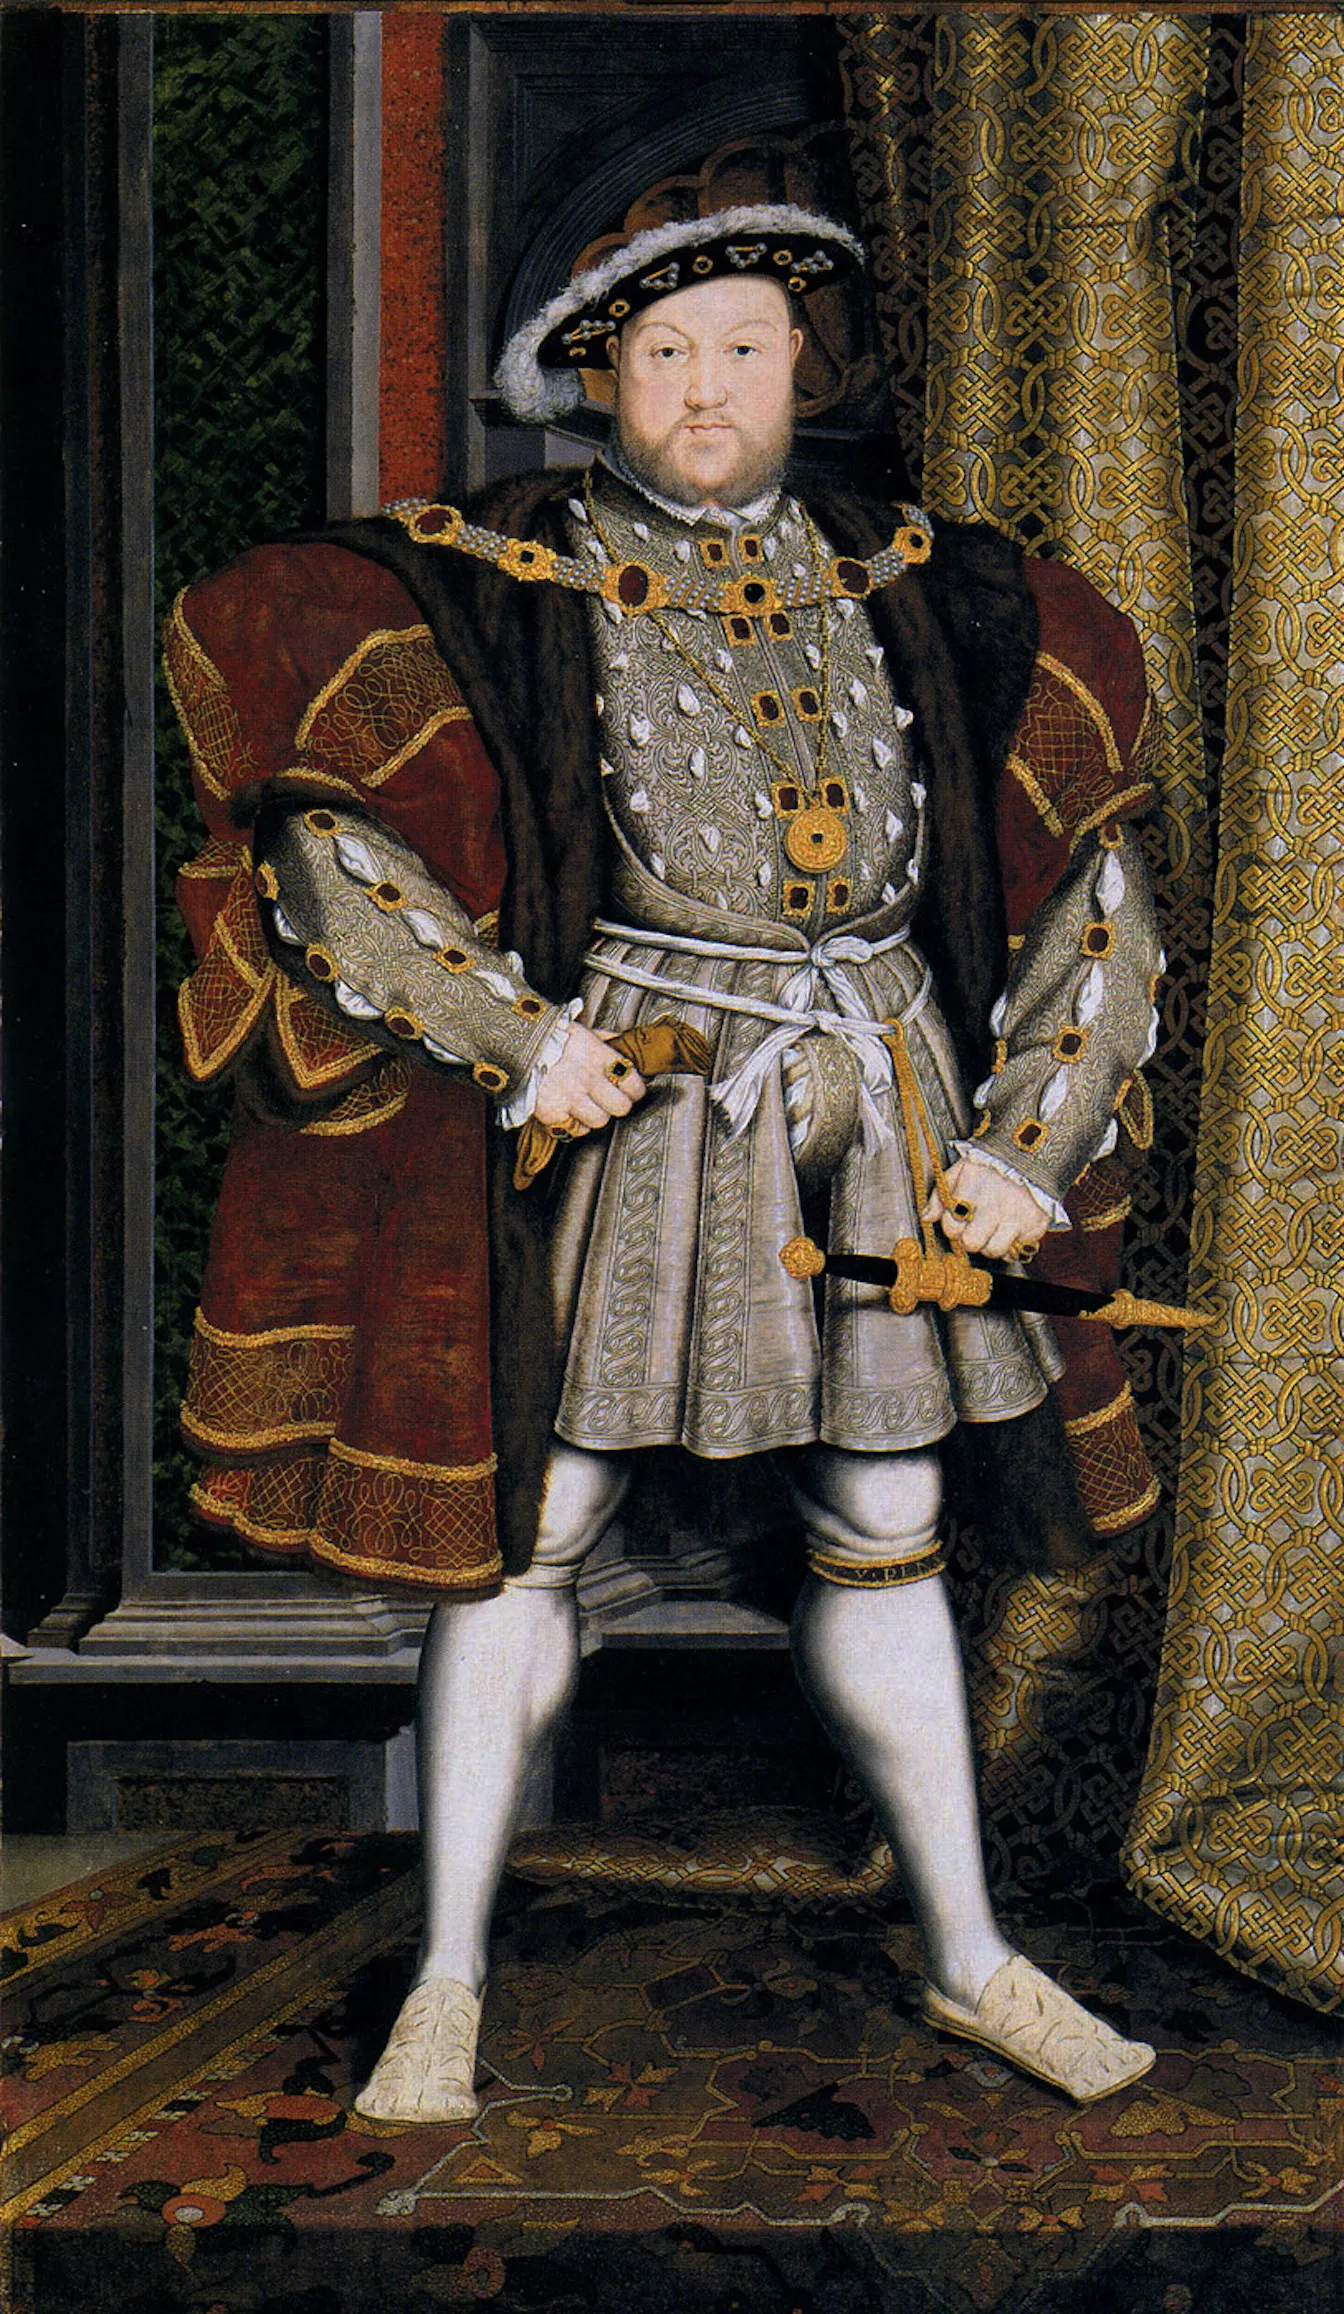 La mort als 15 anys del rei Eduard VI (imatge) i de la seva successora, Joana Grey, va fer que les filles de Caterina i Anna Bolena pugnessin pel tron